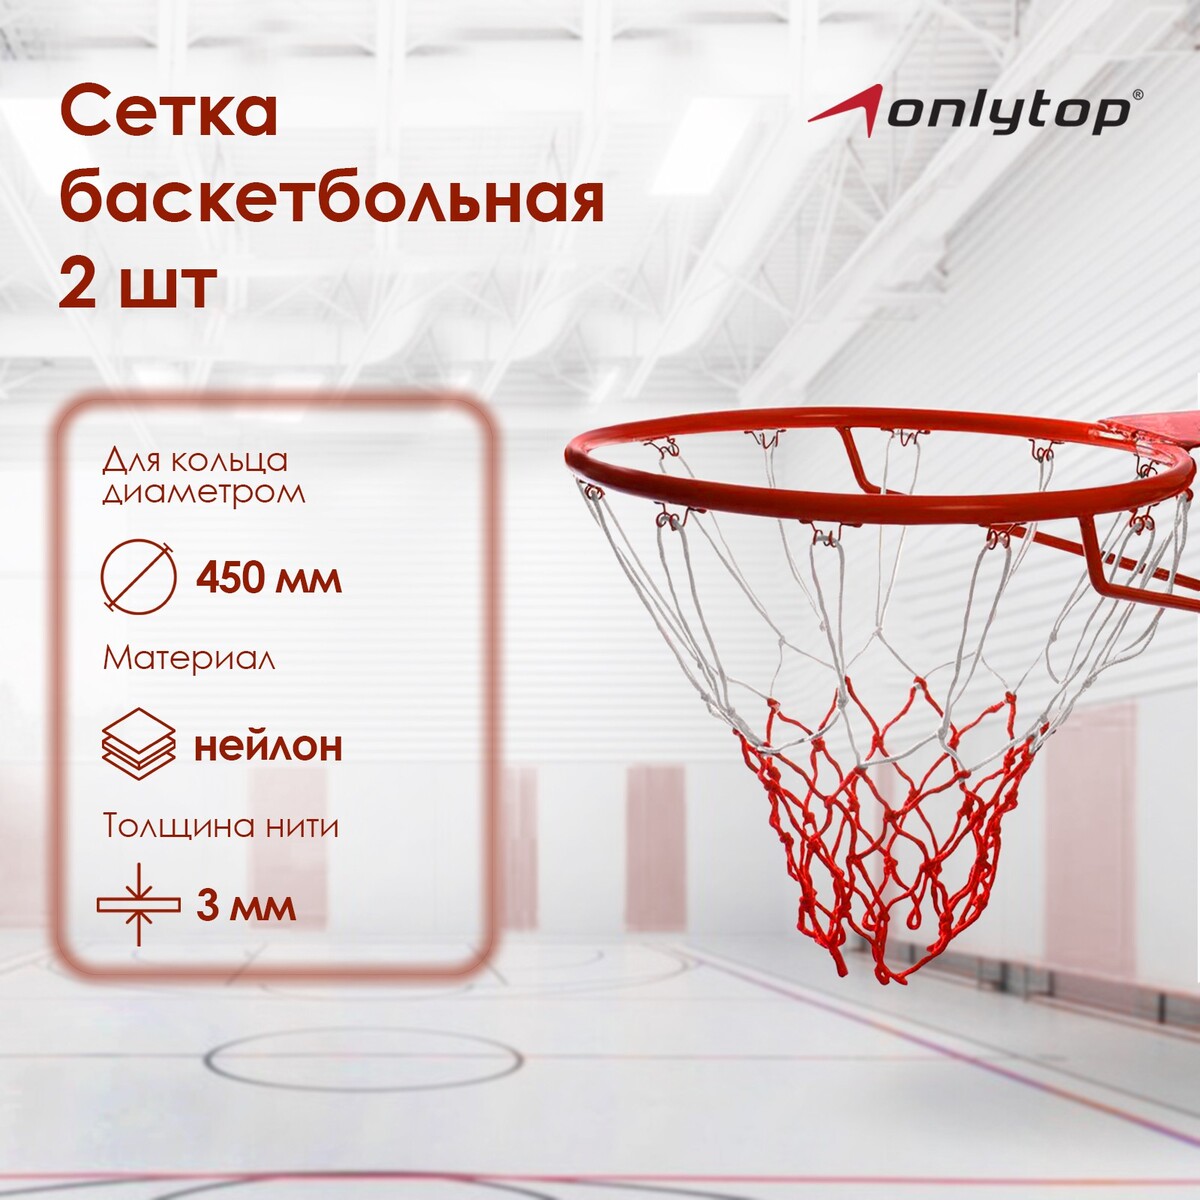 Сетка баскетбольная onlytop, 50 см, нить 3 мм, 2 шт. сетка для настольного тенниса onlytop 155х13 см раздвижная